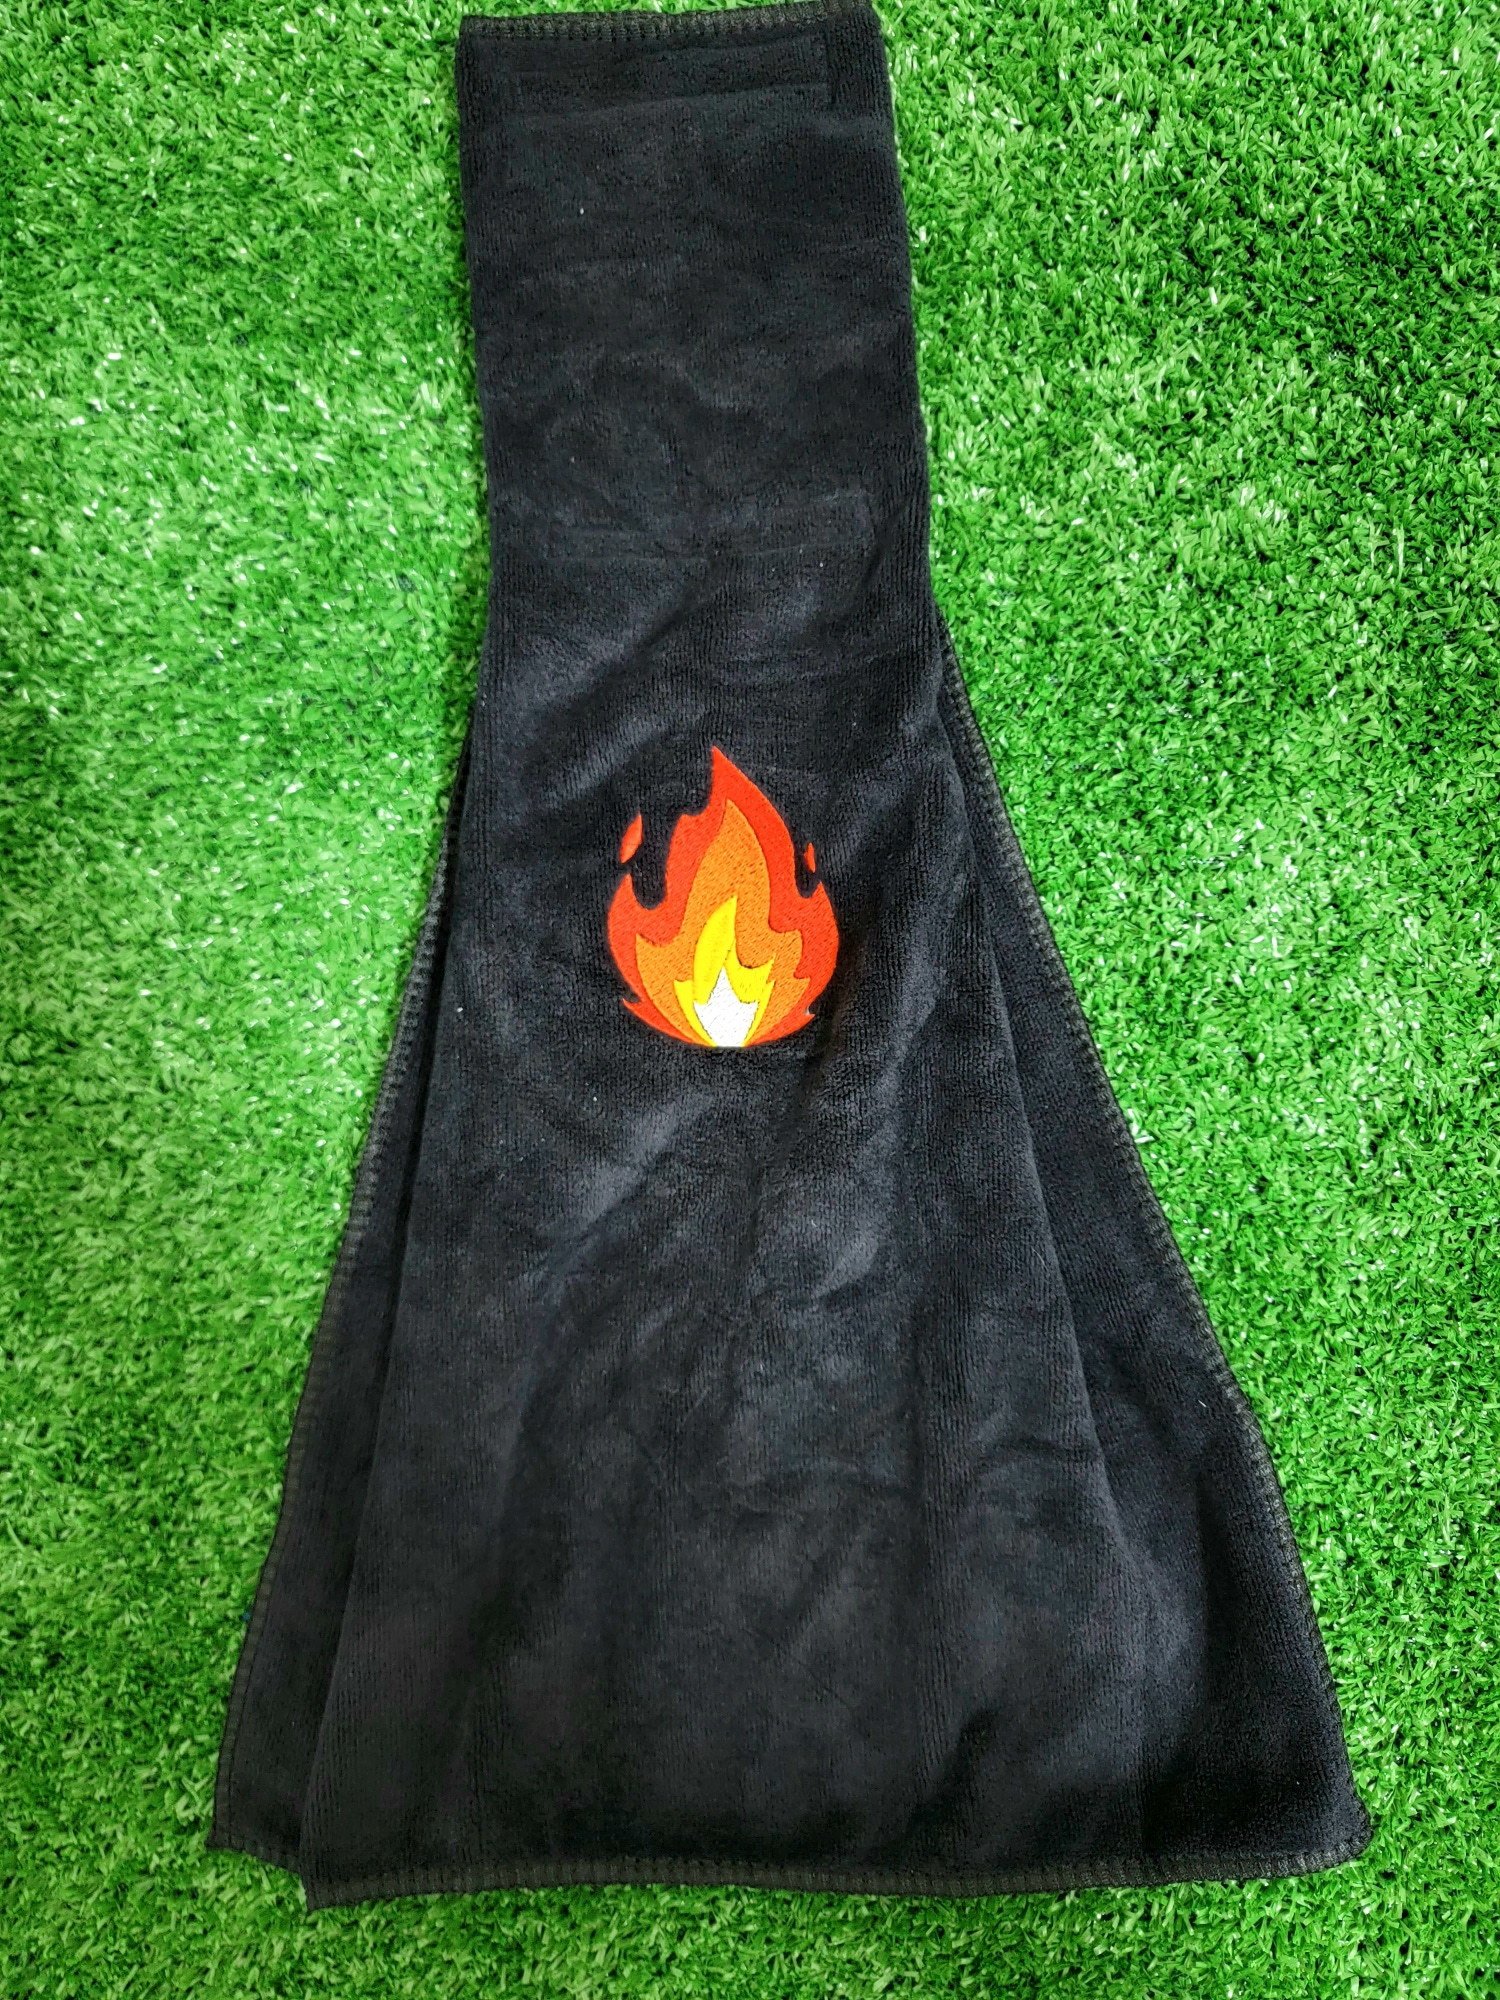 Fire Emoji Football Towel